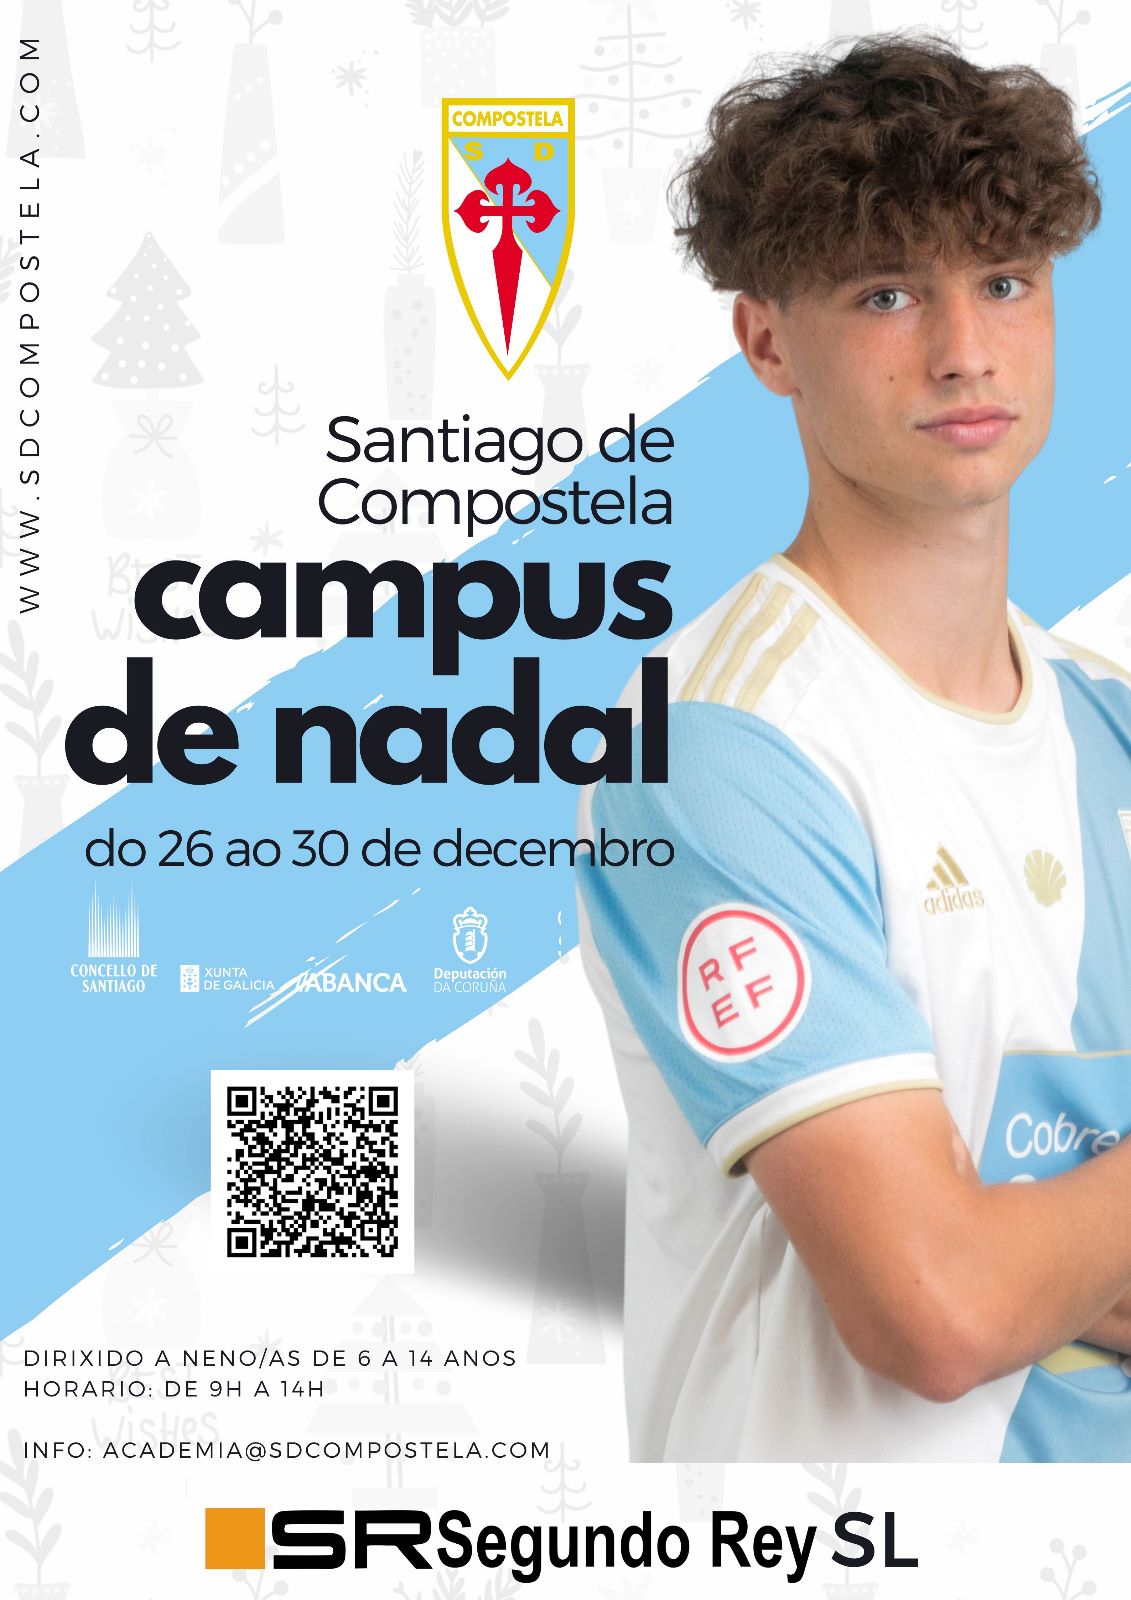 Campus Nadal Santiago